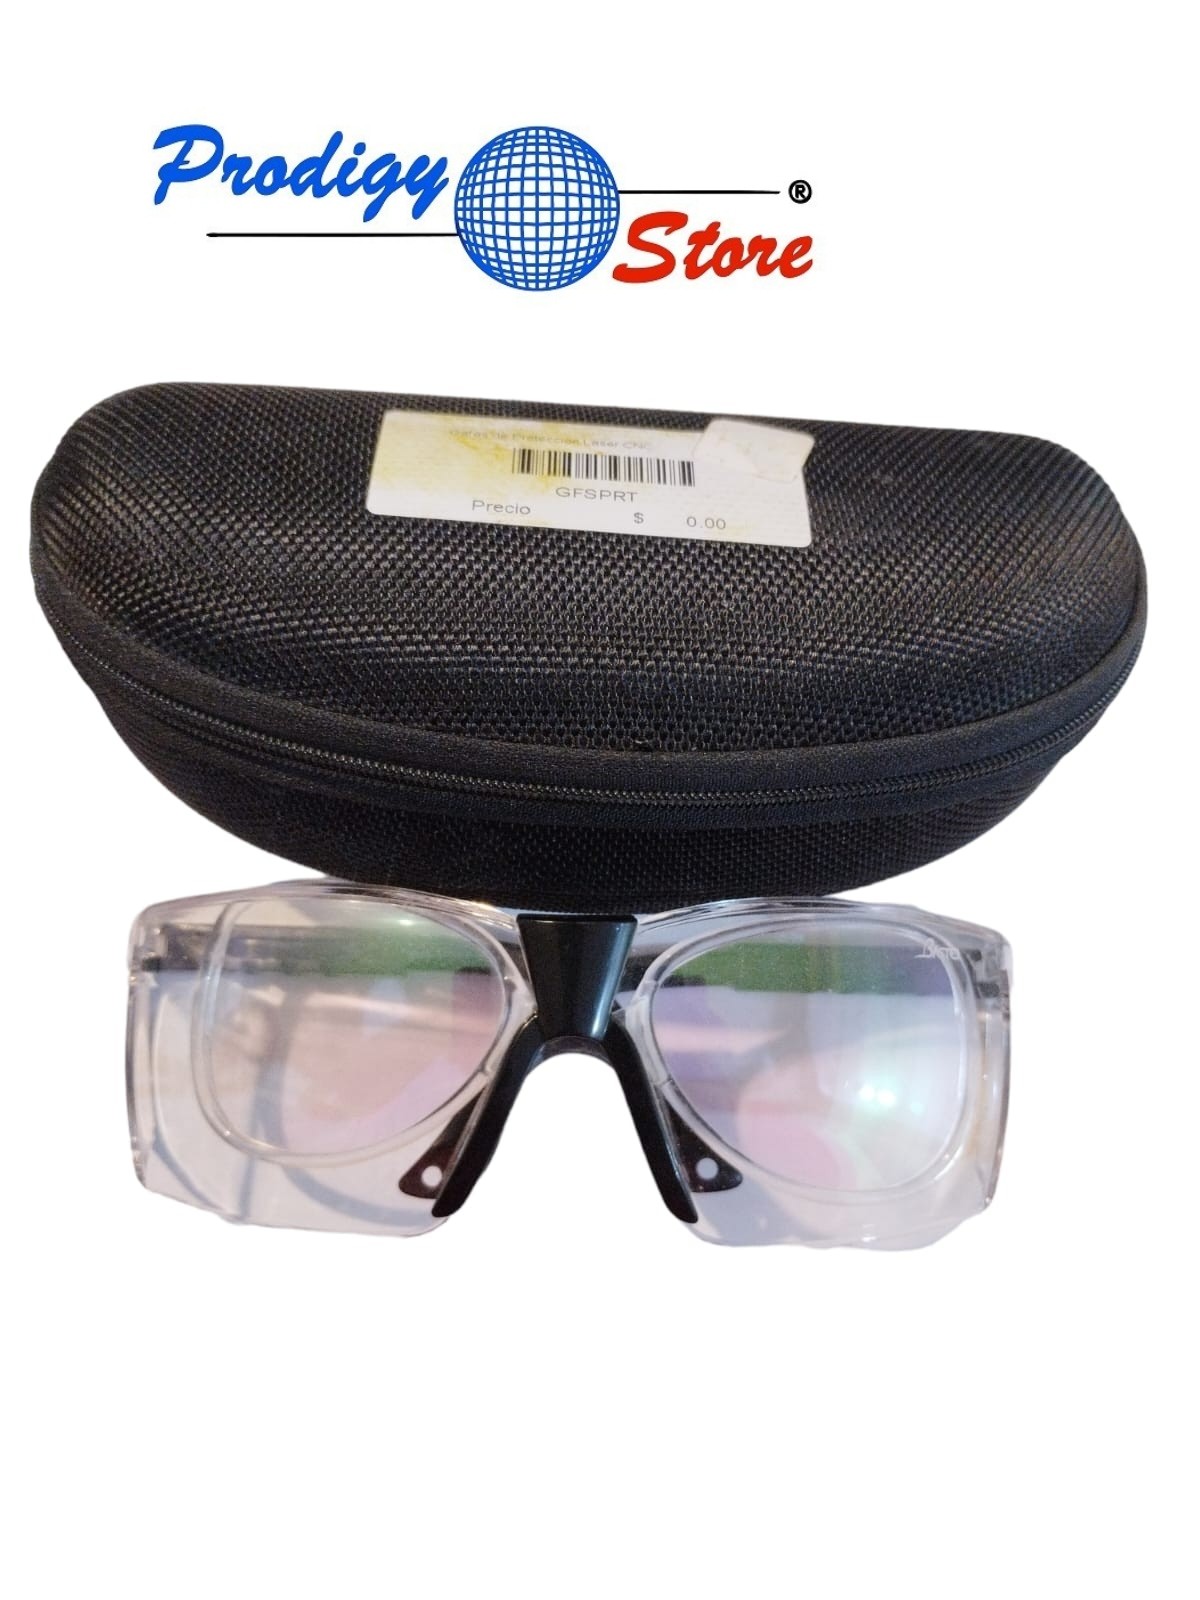 Gafas de Protección Laser Cnc - Prodigystore